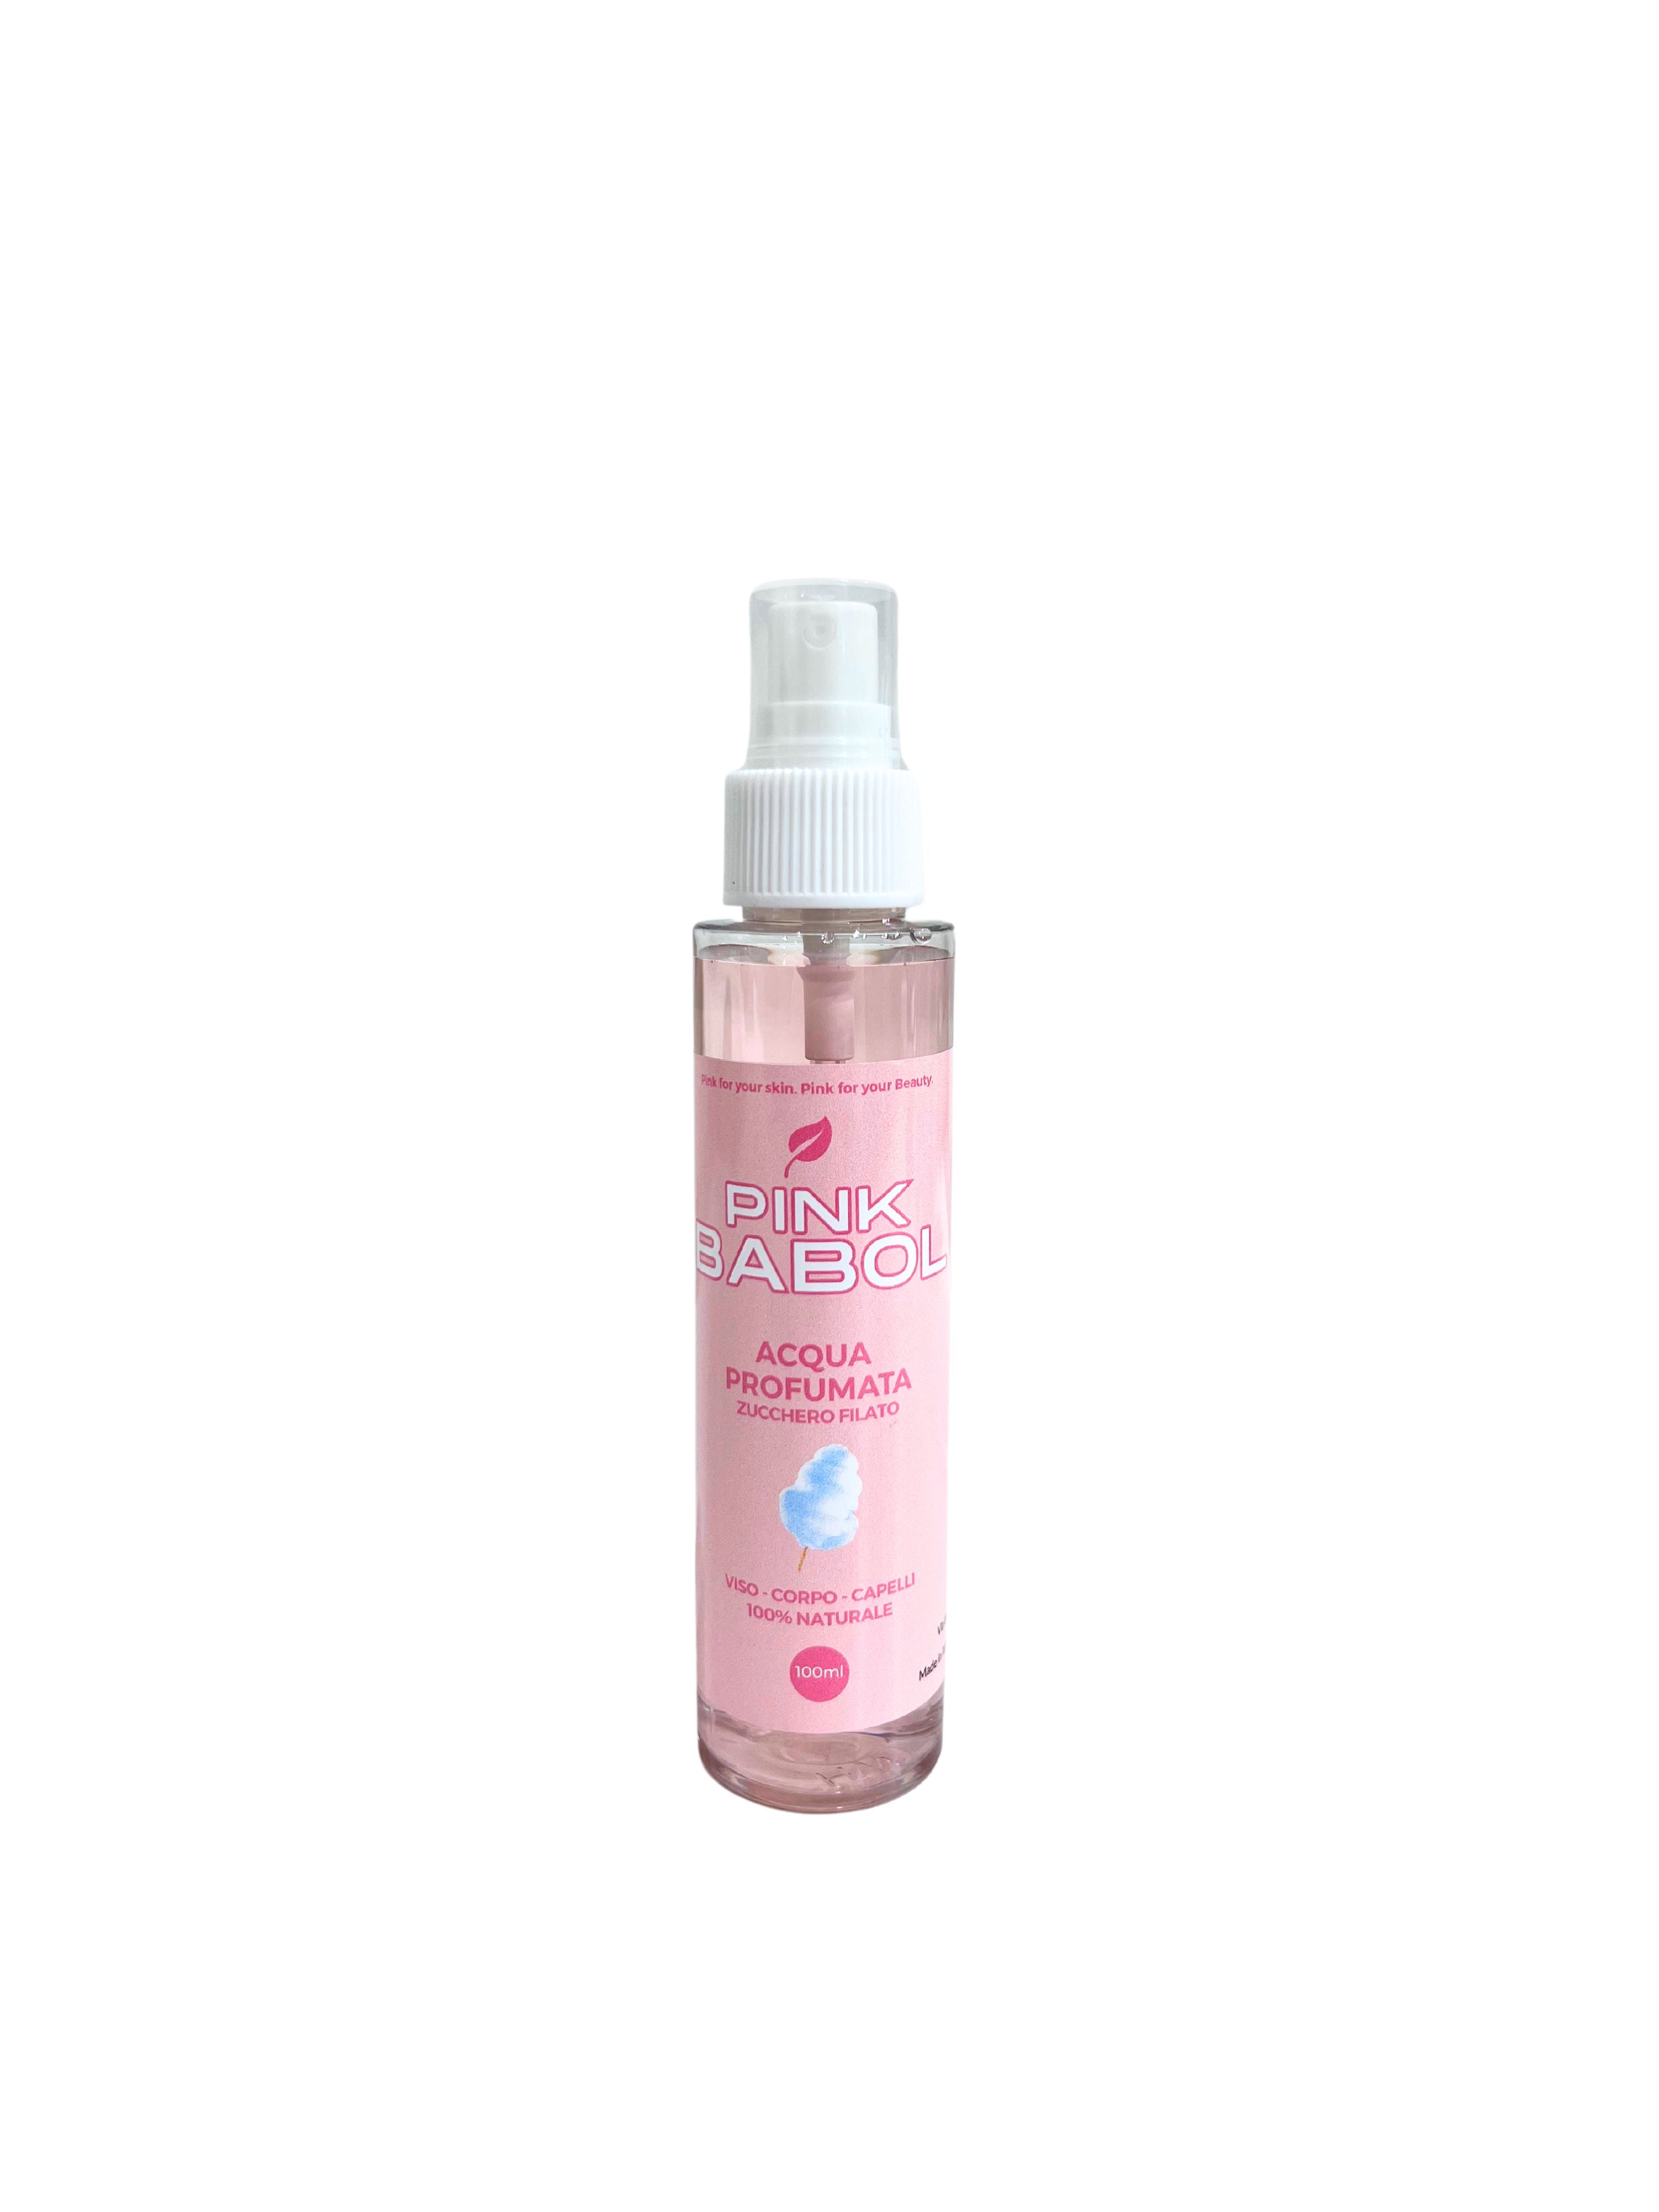 Acqua profumata viso corpo e capelli-Pink Babol